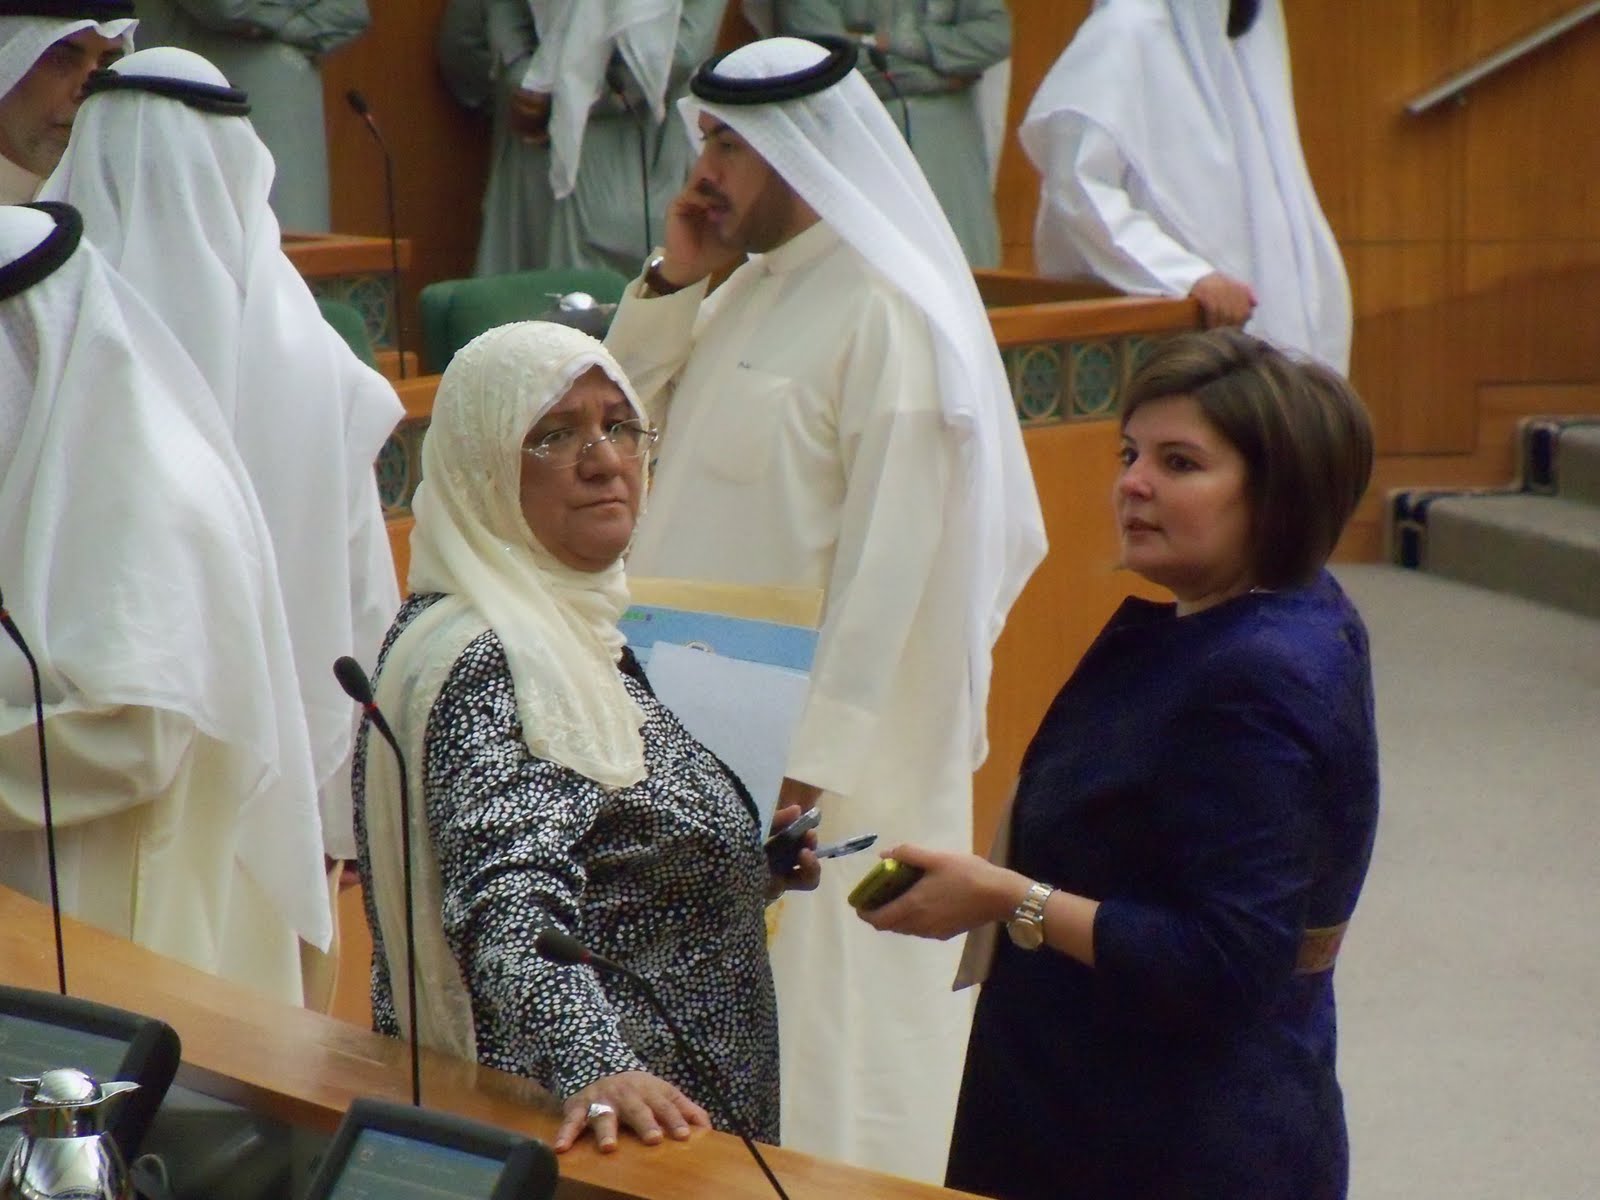 قوانینی که باعث افزایش حضور زنان در پارلمان فرانسه شد/ از اوج تا افول حضور زنان در پارلمان کویت